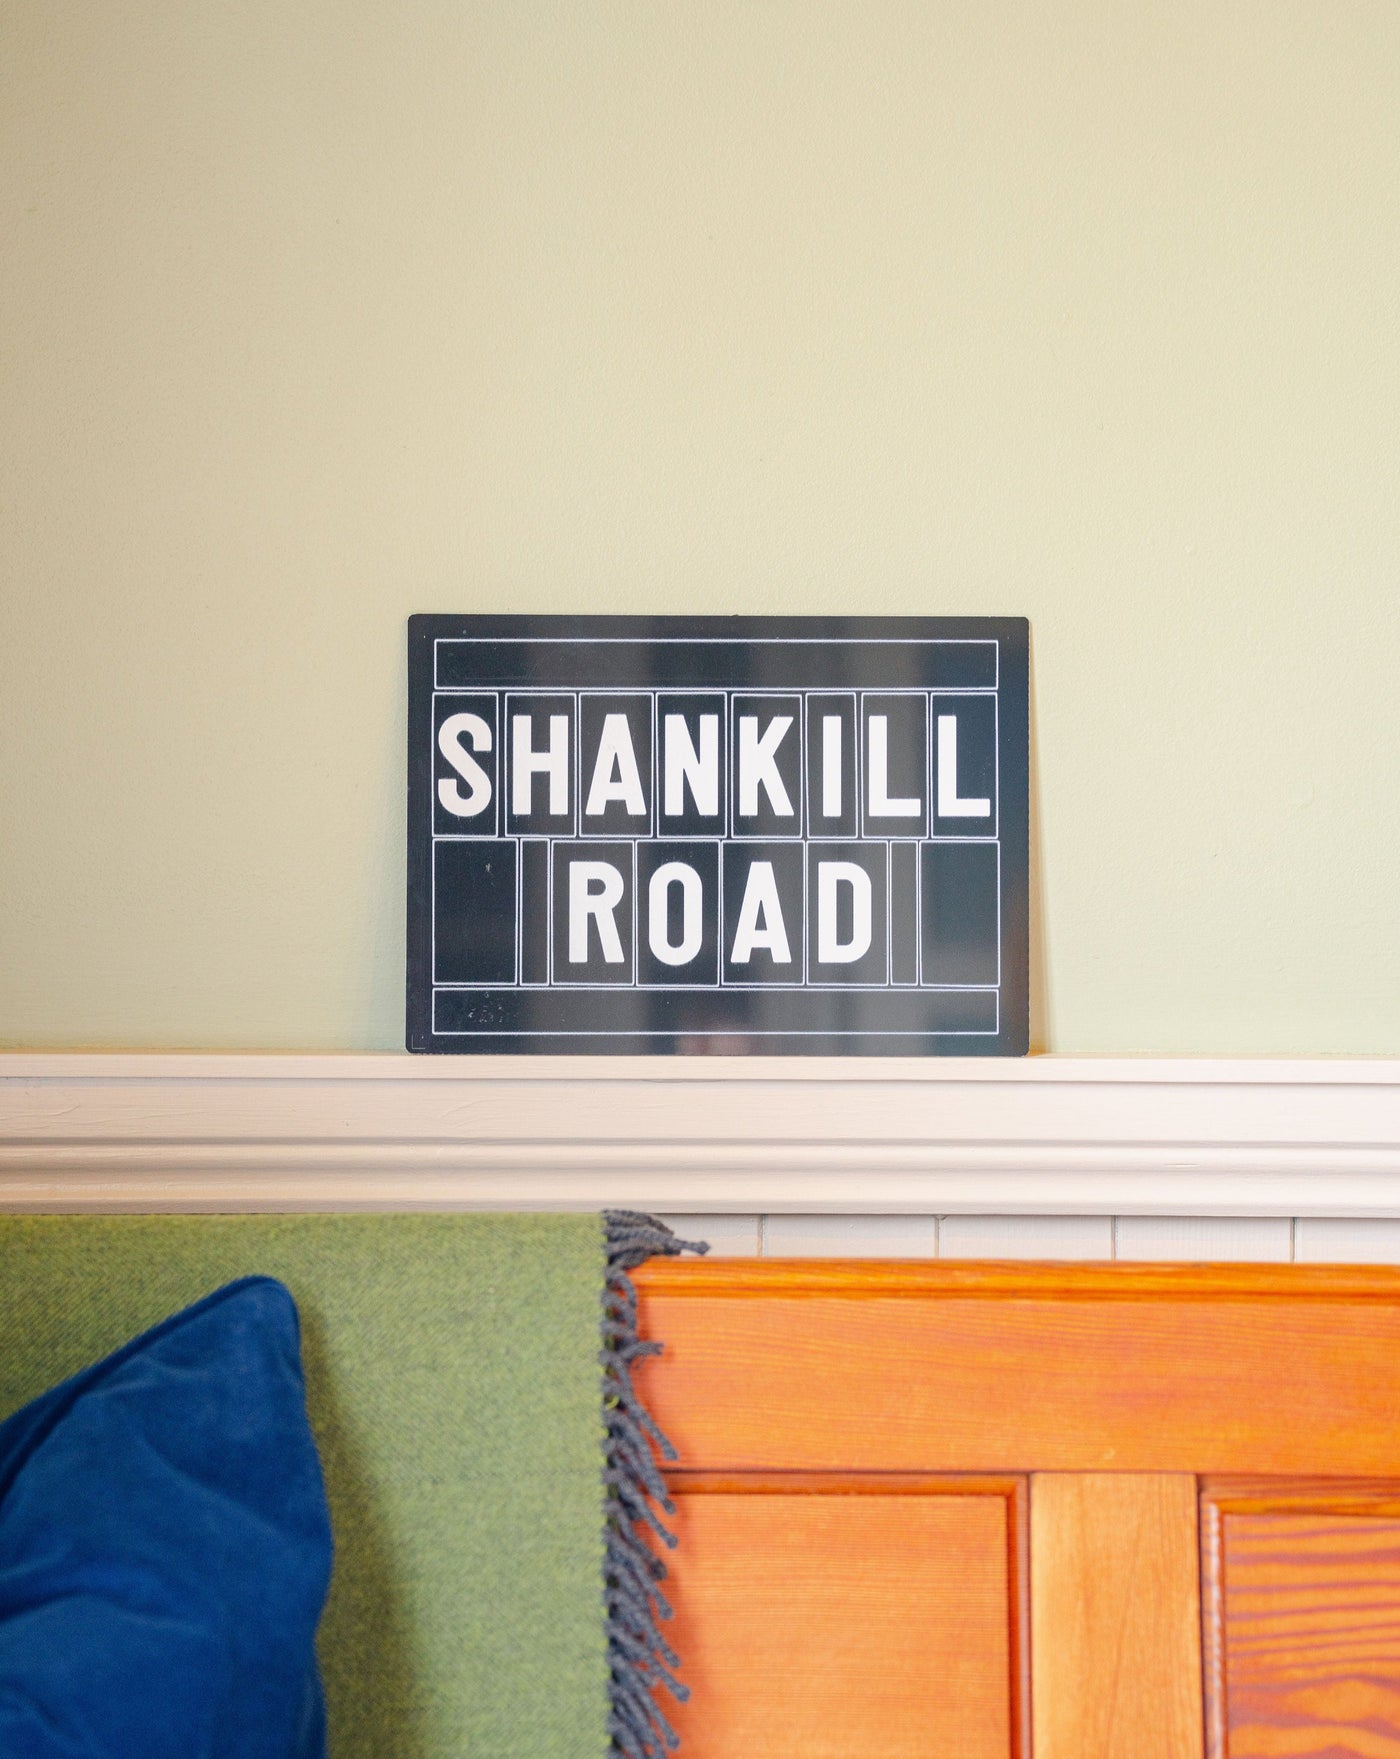 Shankill Road Street Sign